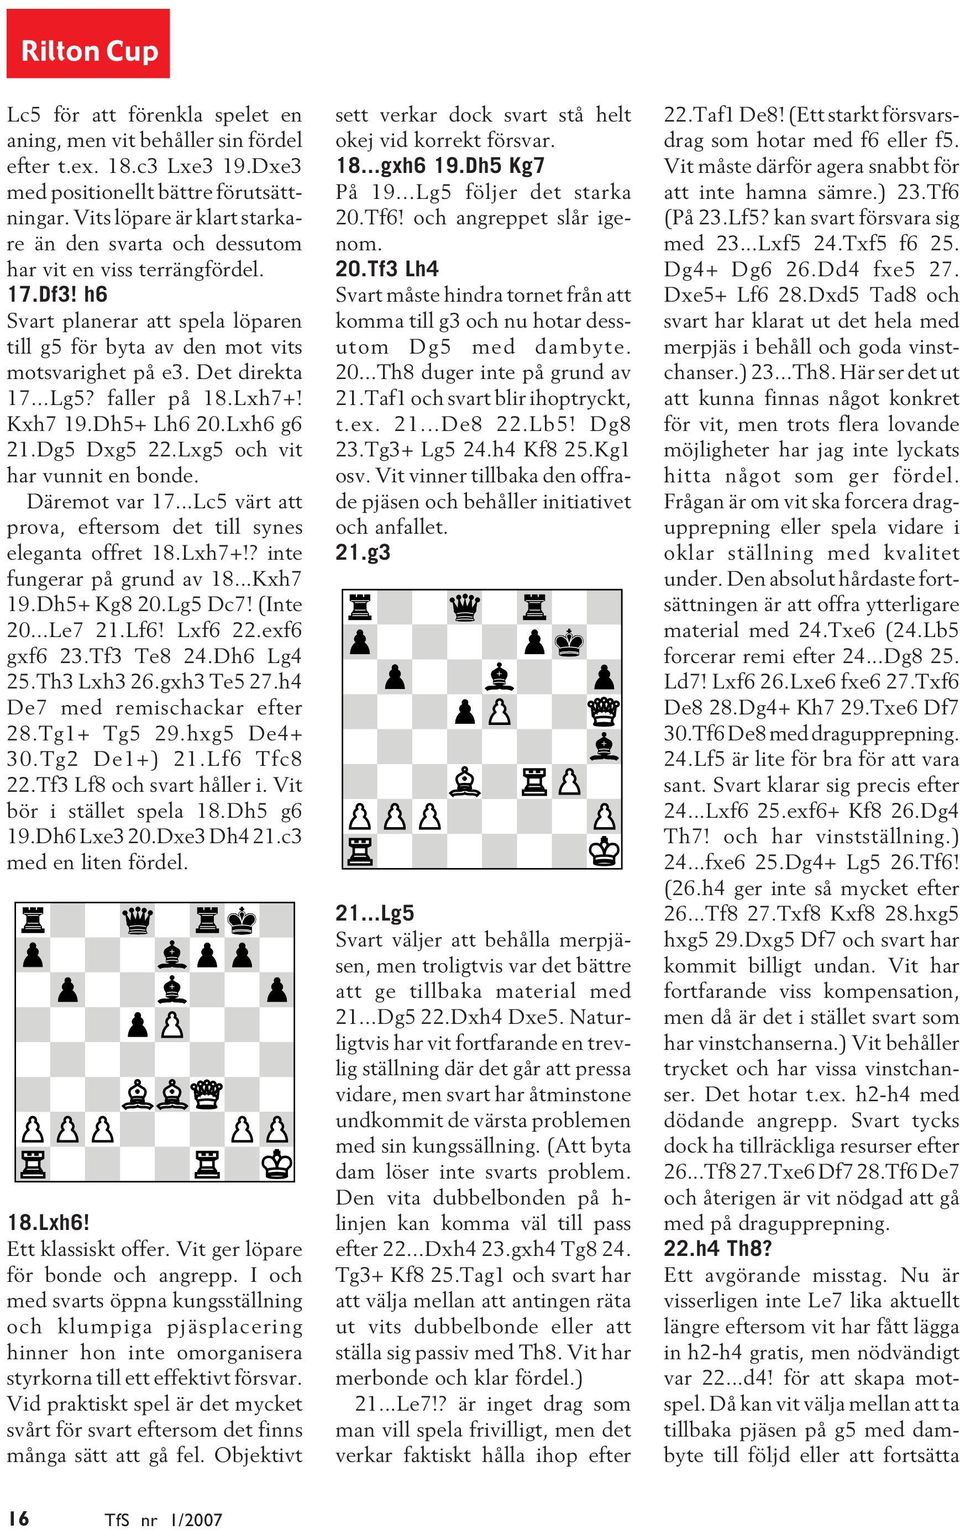 ..Lg5? faller på 18.Lxh7+! Kxh7 19.Dh5+ Lh6 20.Lxh6 g6 21.Dg5 Dxg5 22.Lxg5 och vit har vunnit en bonde. Däremot var 17...Lc5 värt att prova, eftersom det till synes eleganta offret 18.Lxh7+!? inte fungerar på grund av 18.